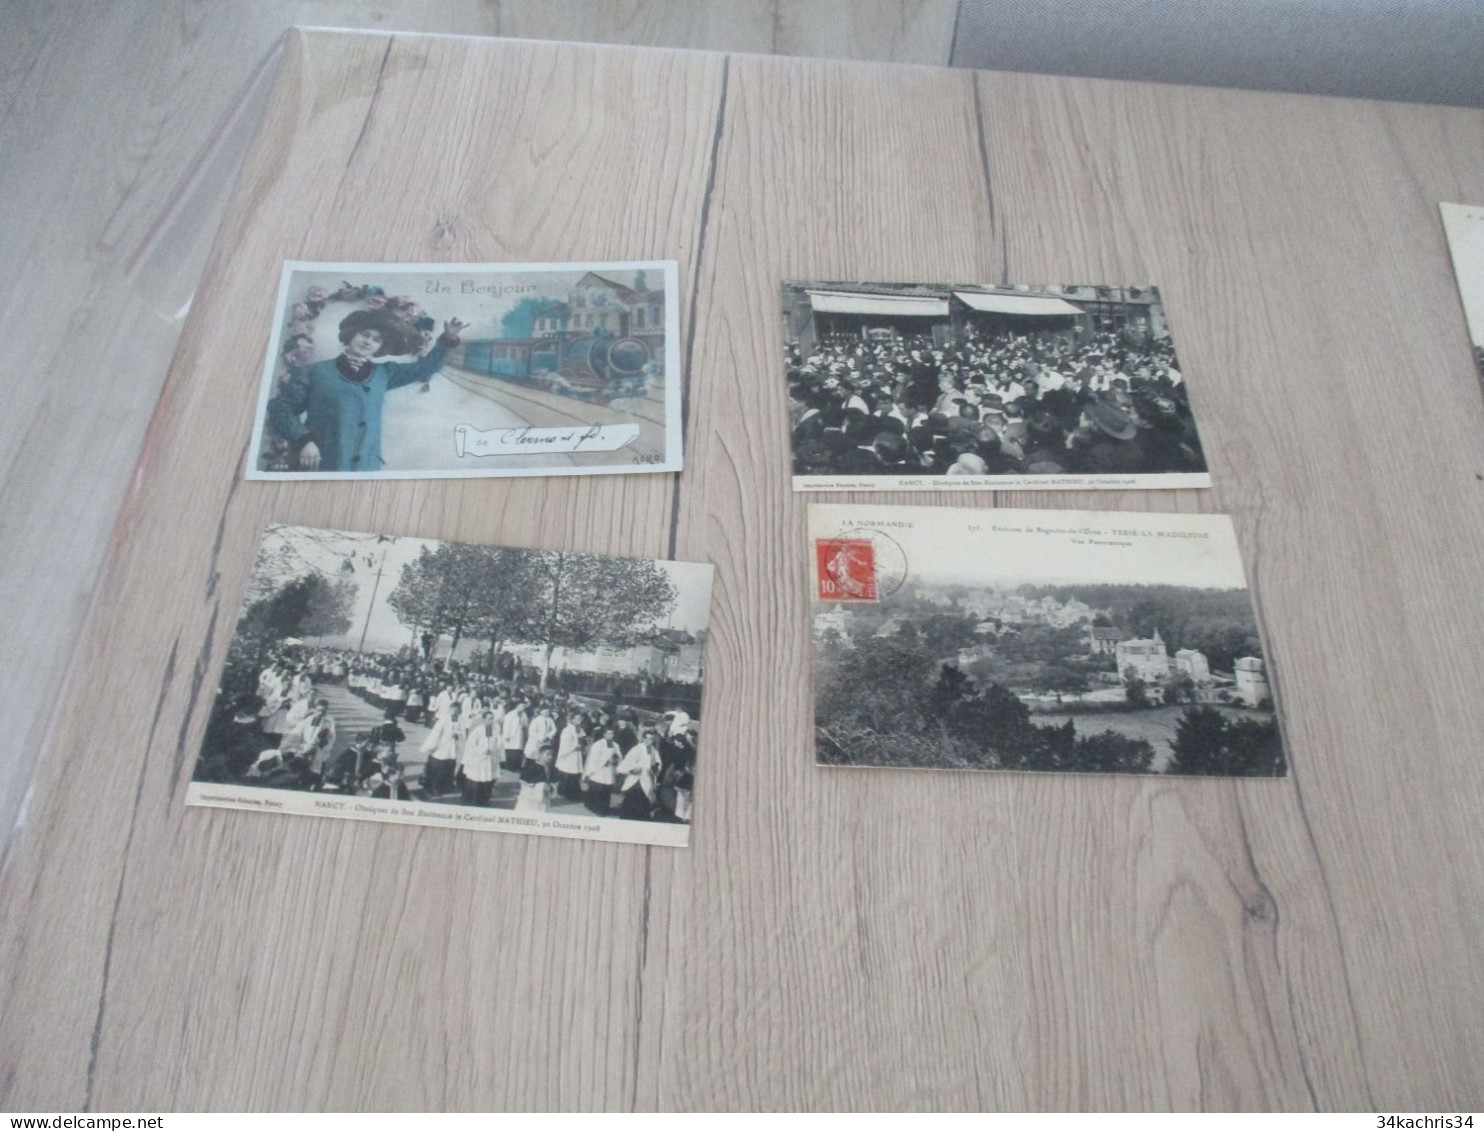 N°4 déstockage collection énorme CPA cartes postales 100 CPA différentes petites et moyennes cartes pas de drouille